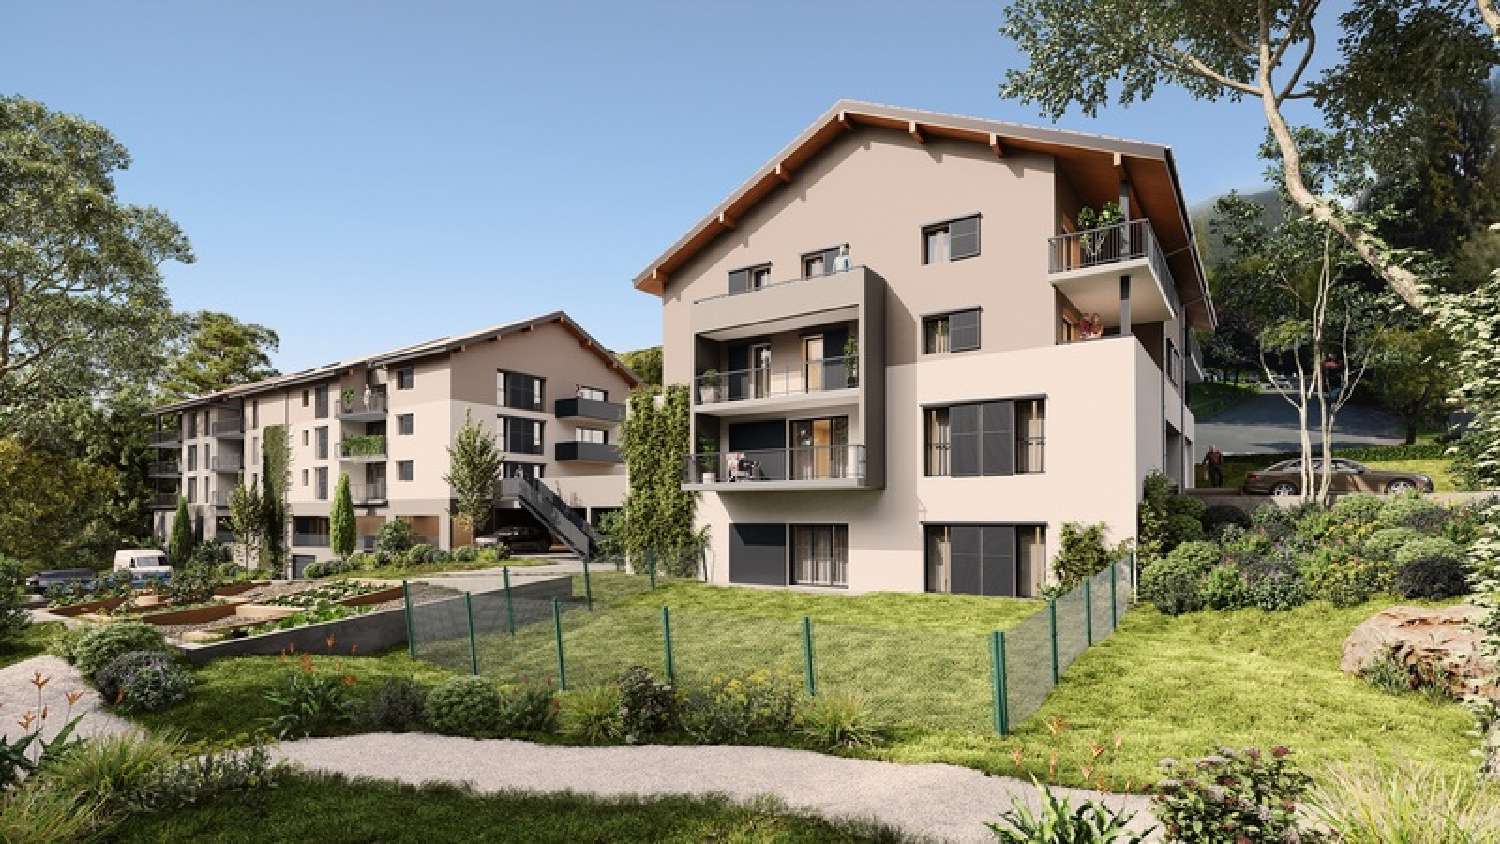  à vendre appartement Villaz Haute-Savoie 4